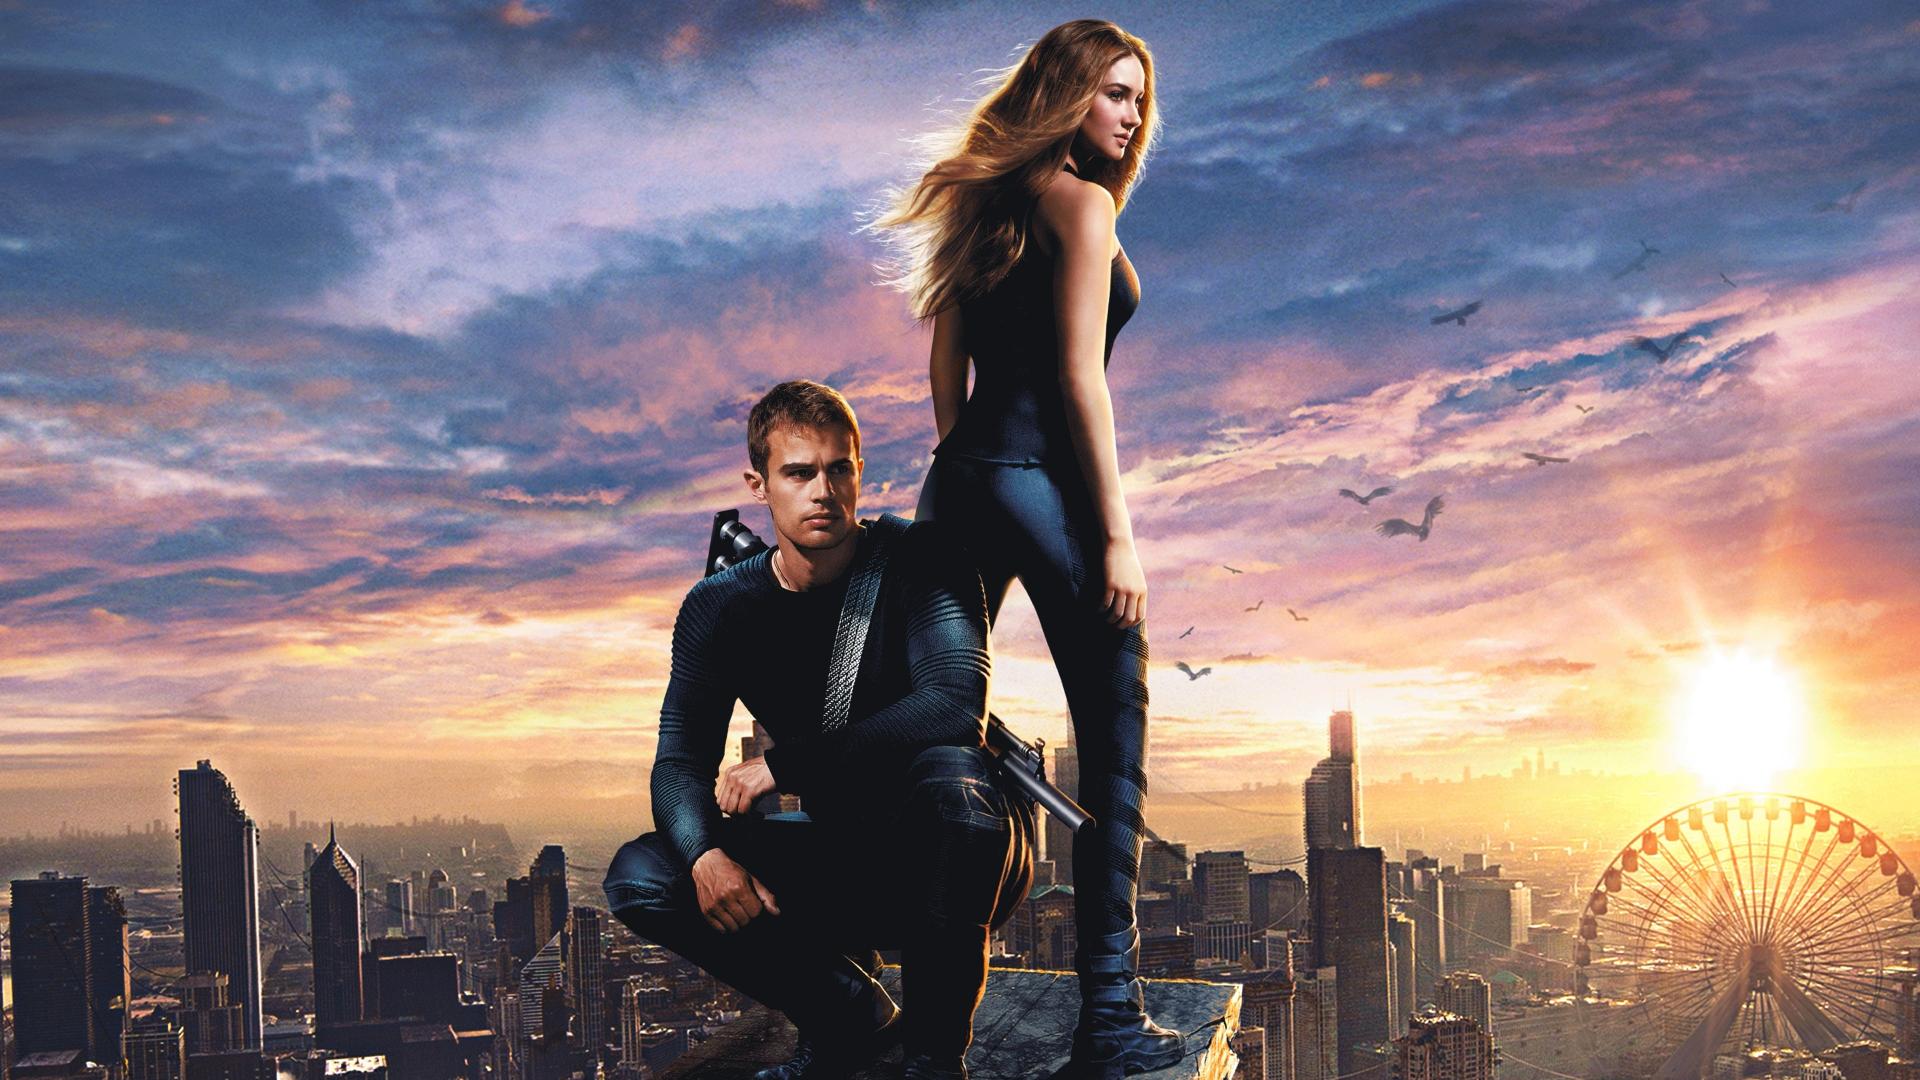 دانلود فیلم Divergent 2014